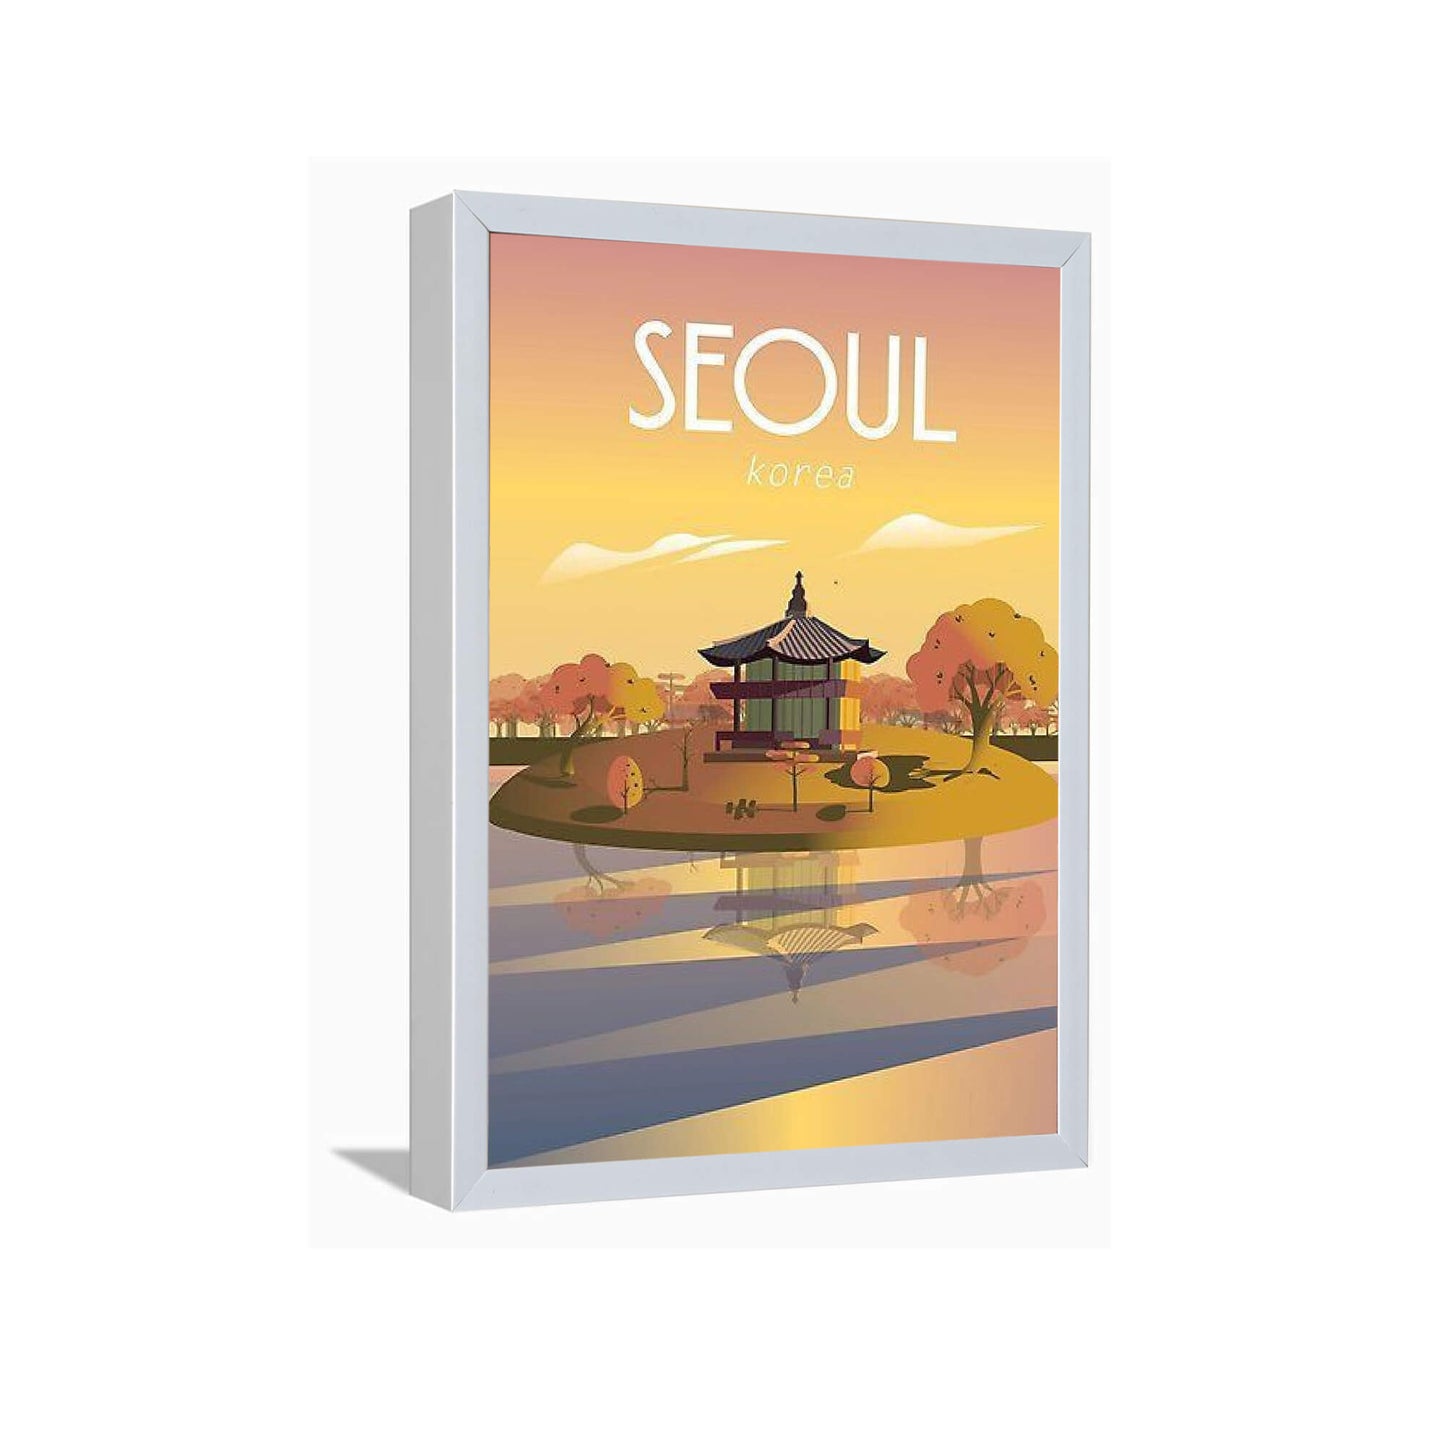 Seoul Korea---